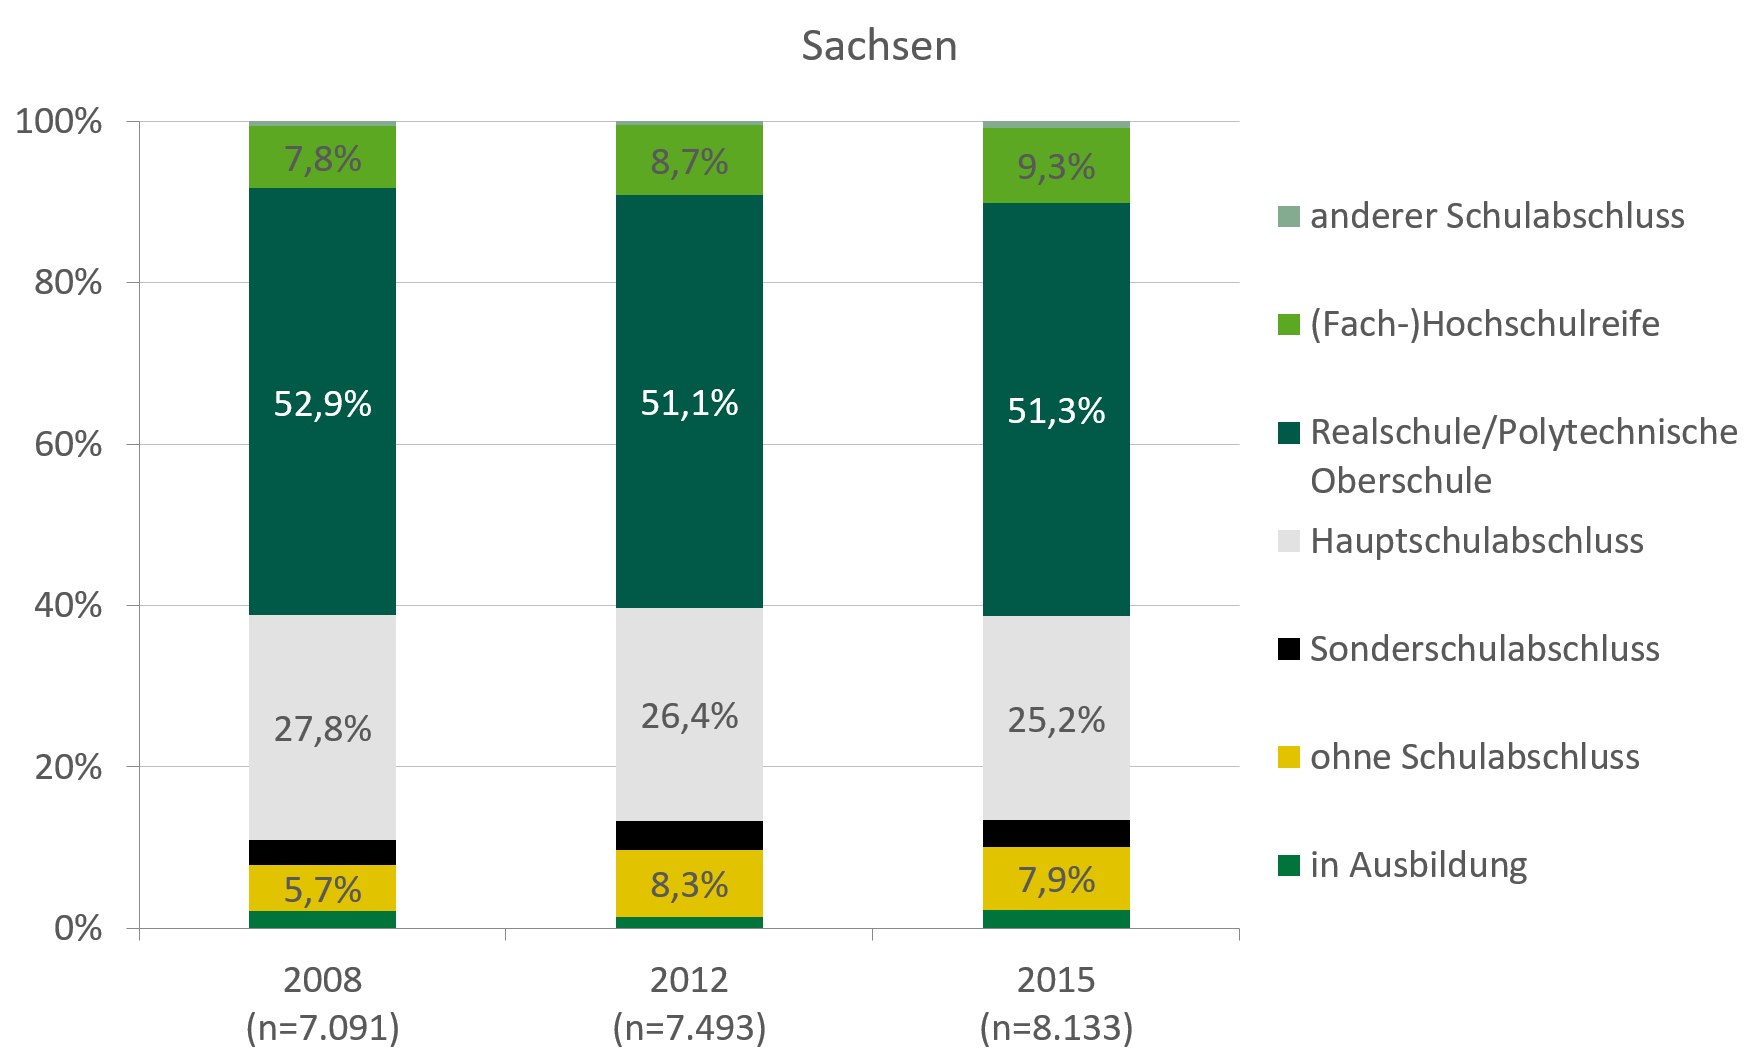 Mehr als die Hälfte der Klientel in der ambulanten Suchthilfe in Sachsen hat einen Realschul-/Poltechnischen Abschluss. Im Jahr 2015 haben immer noch 7,9 Prozent keinen Schulabschluss und über 25 Prozent einen Hauptschulabschluss. In Deutschland haben über 41 Prozent einen Hauptschulabschluss dafür aber fast 13 Prozent einen (Fach)Hochschulabschluss im Vergleich zu nur 9,3 Prozent in Sachsen.